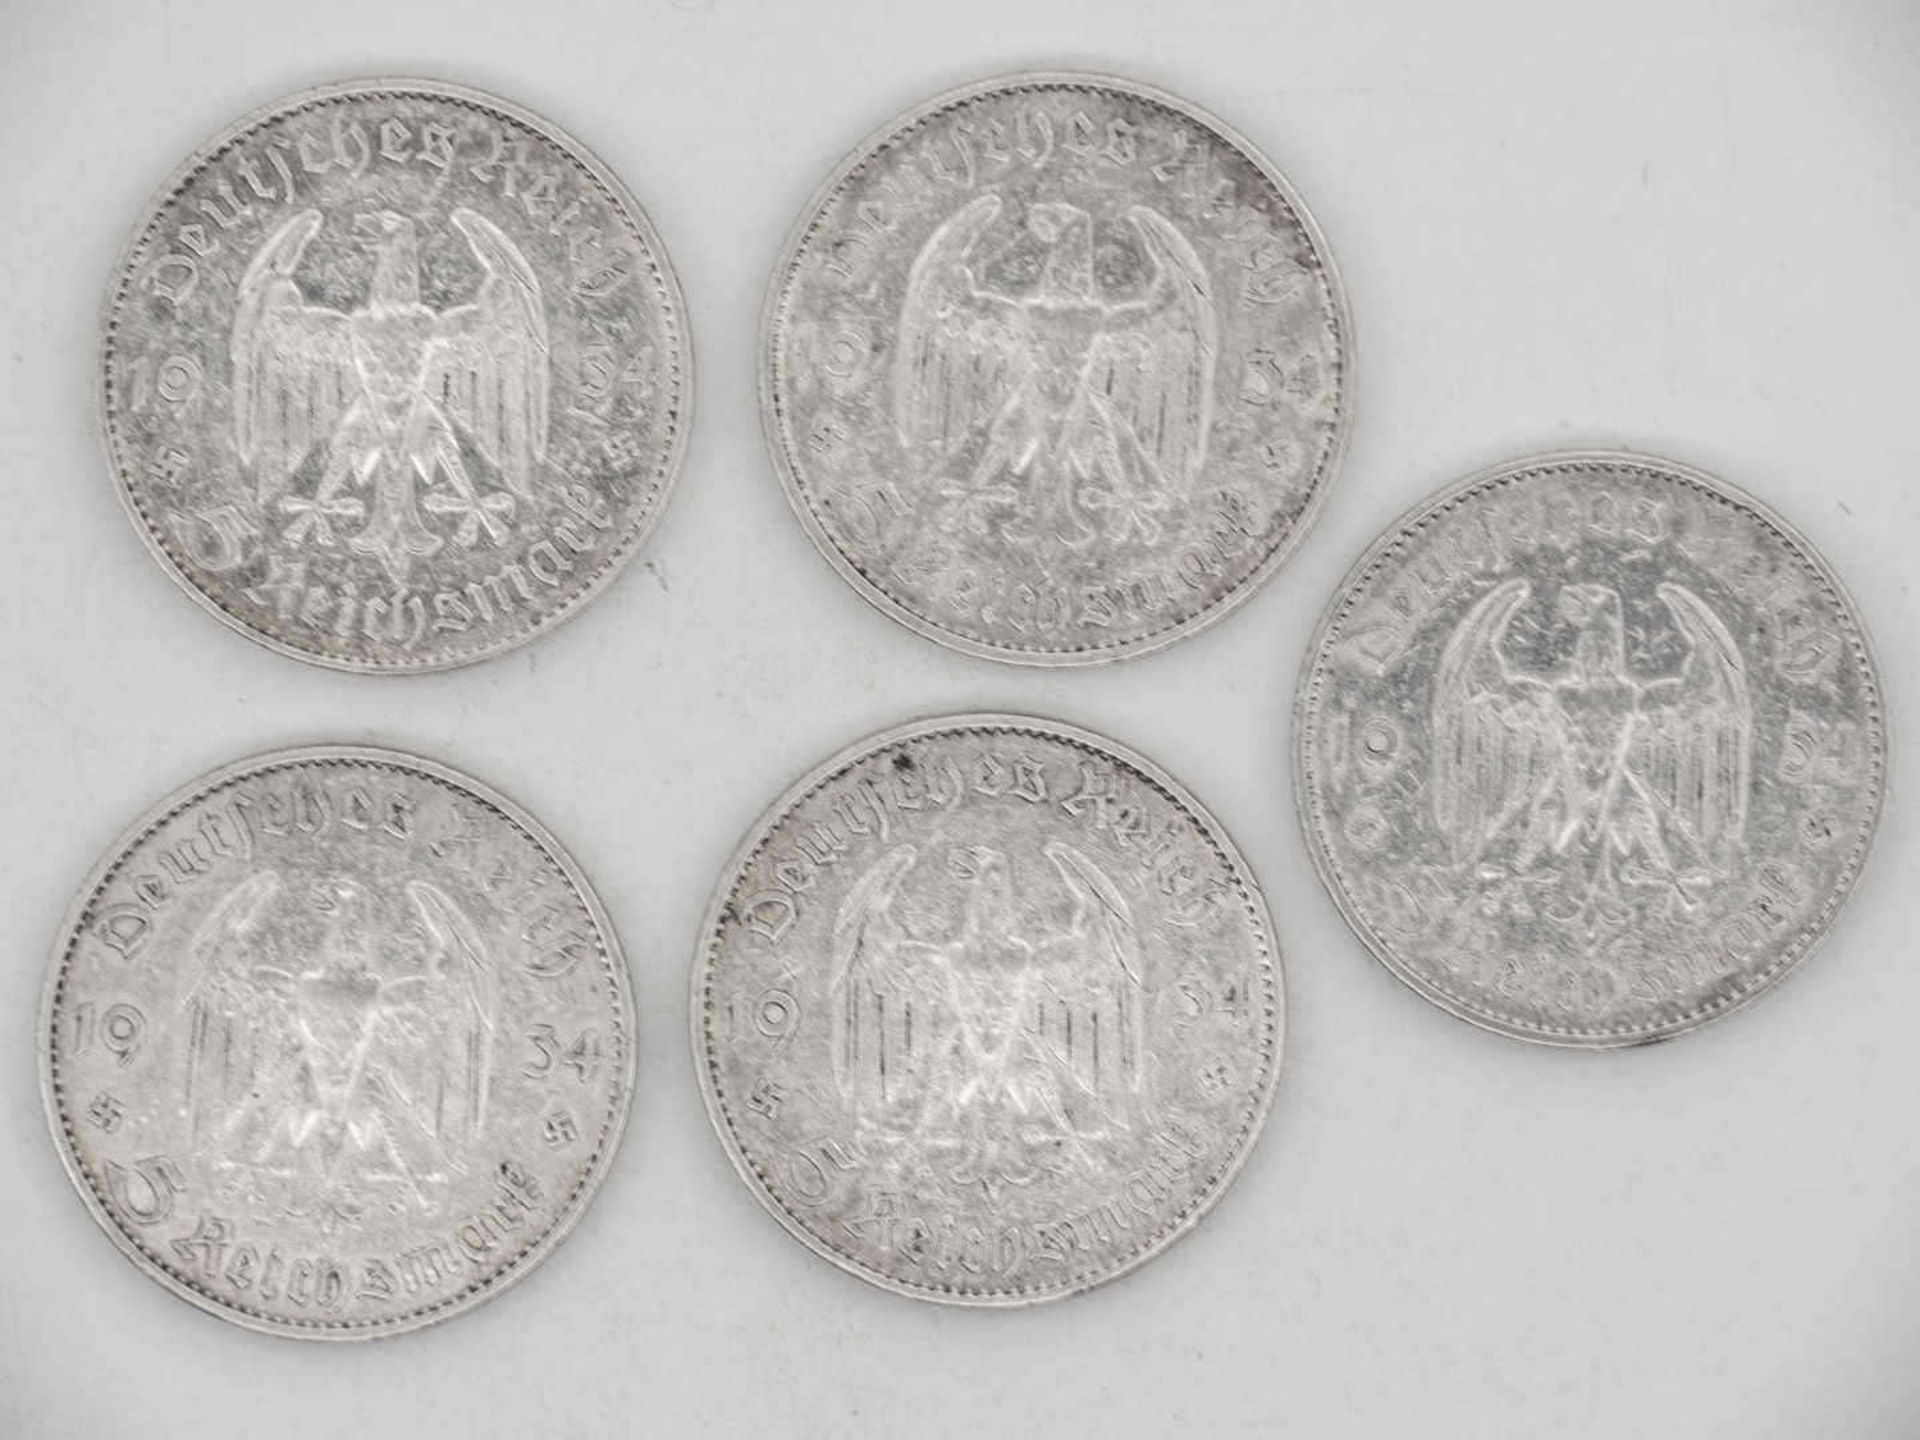 Deutschland 1934 A, D, E, F, G, Lot 5.- Reichsmark - Silbermünzen "Garnisonskirche". Qualität: ss. - Bild 2 aus 2